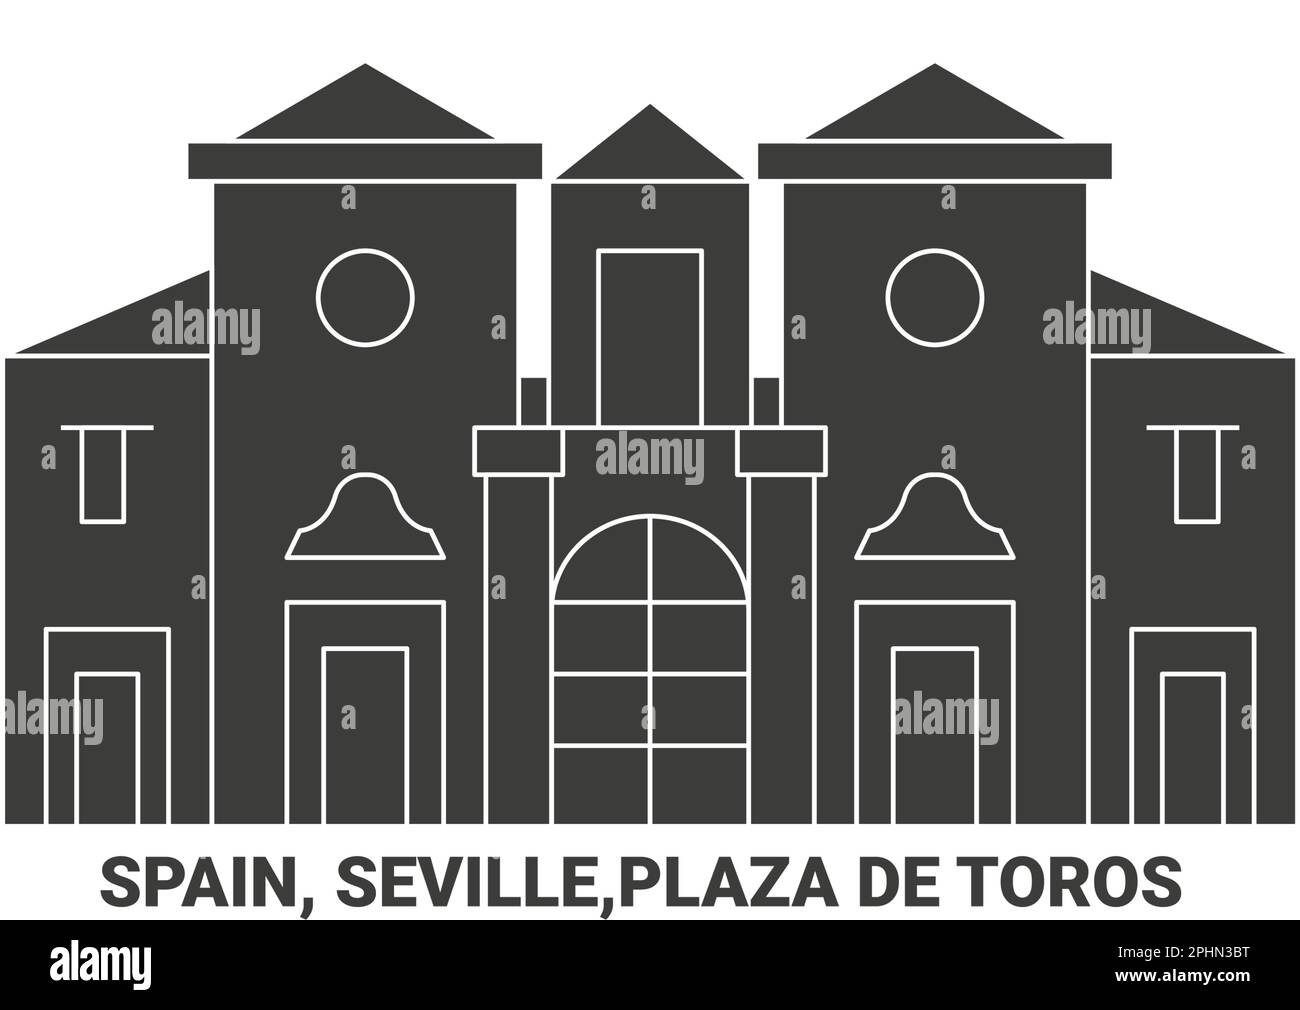 Spain, Seville,Plaza De Toros , travel landmark vector illustration Stock Vector